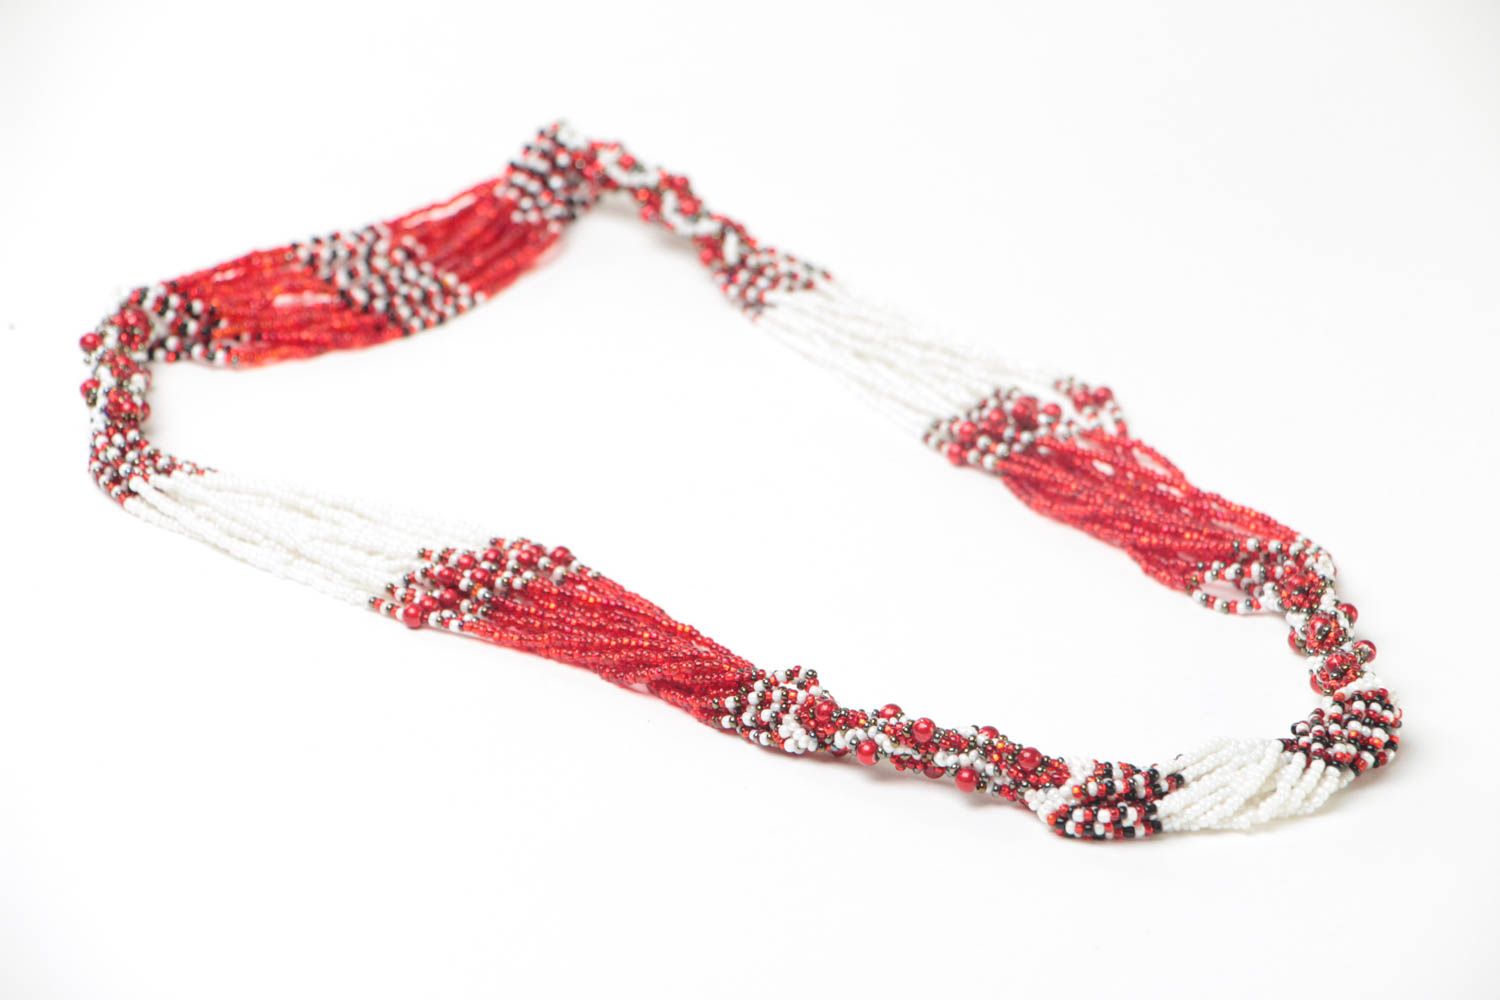 Ожерелье из бисера длинное красное с белым стильное этническое ручной работы фото 3